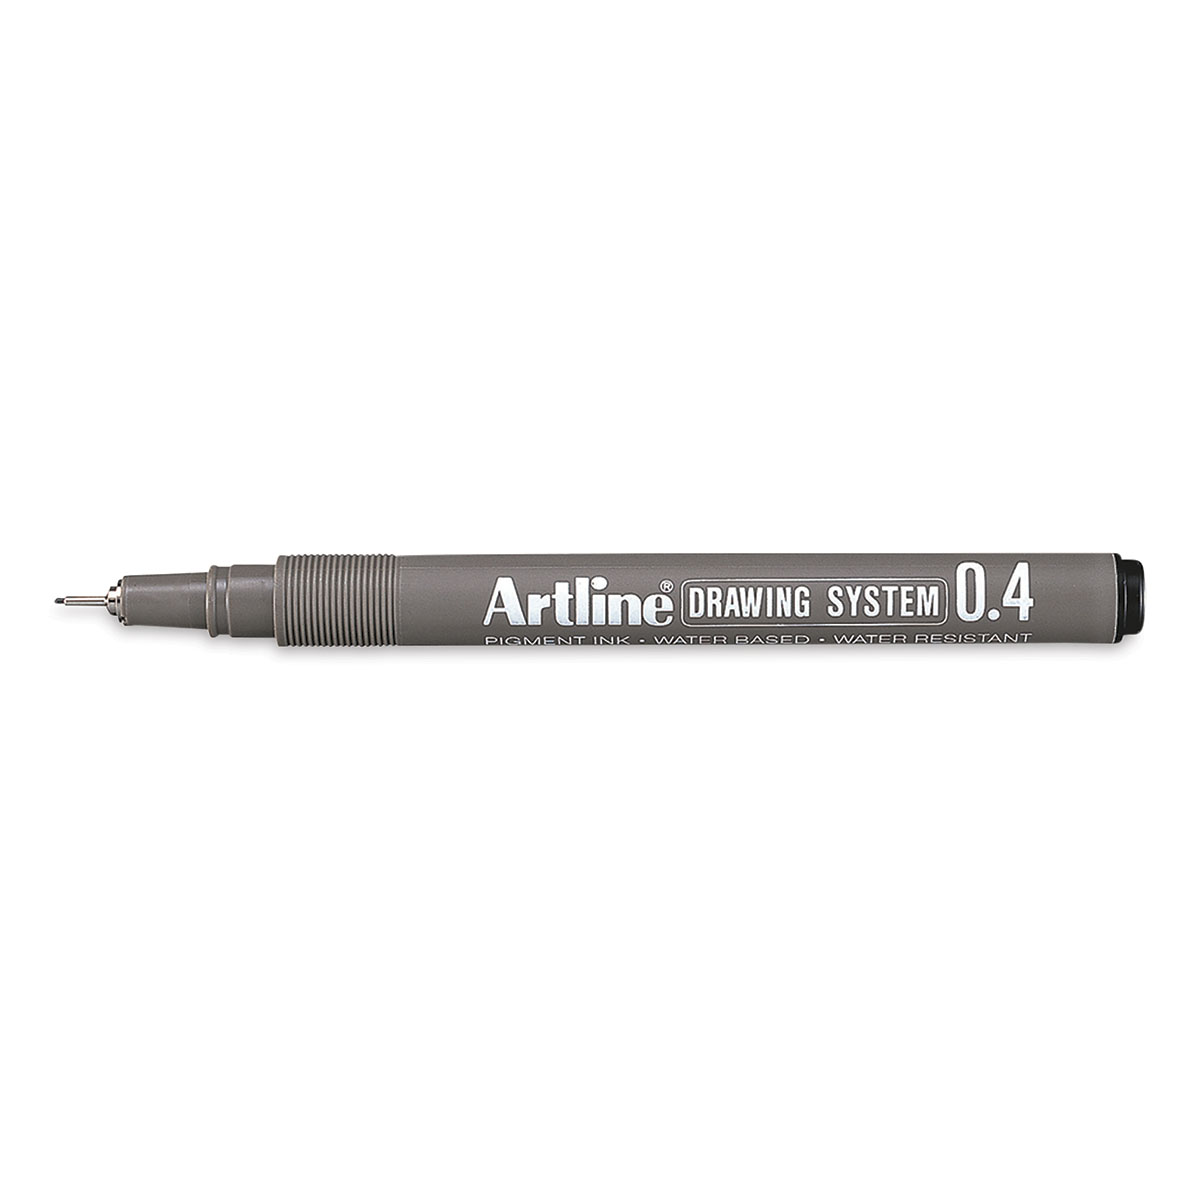 Artline Drawing Pen Set - Assorted Sizes, Wallet, Set of 3